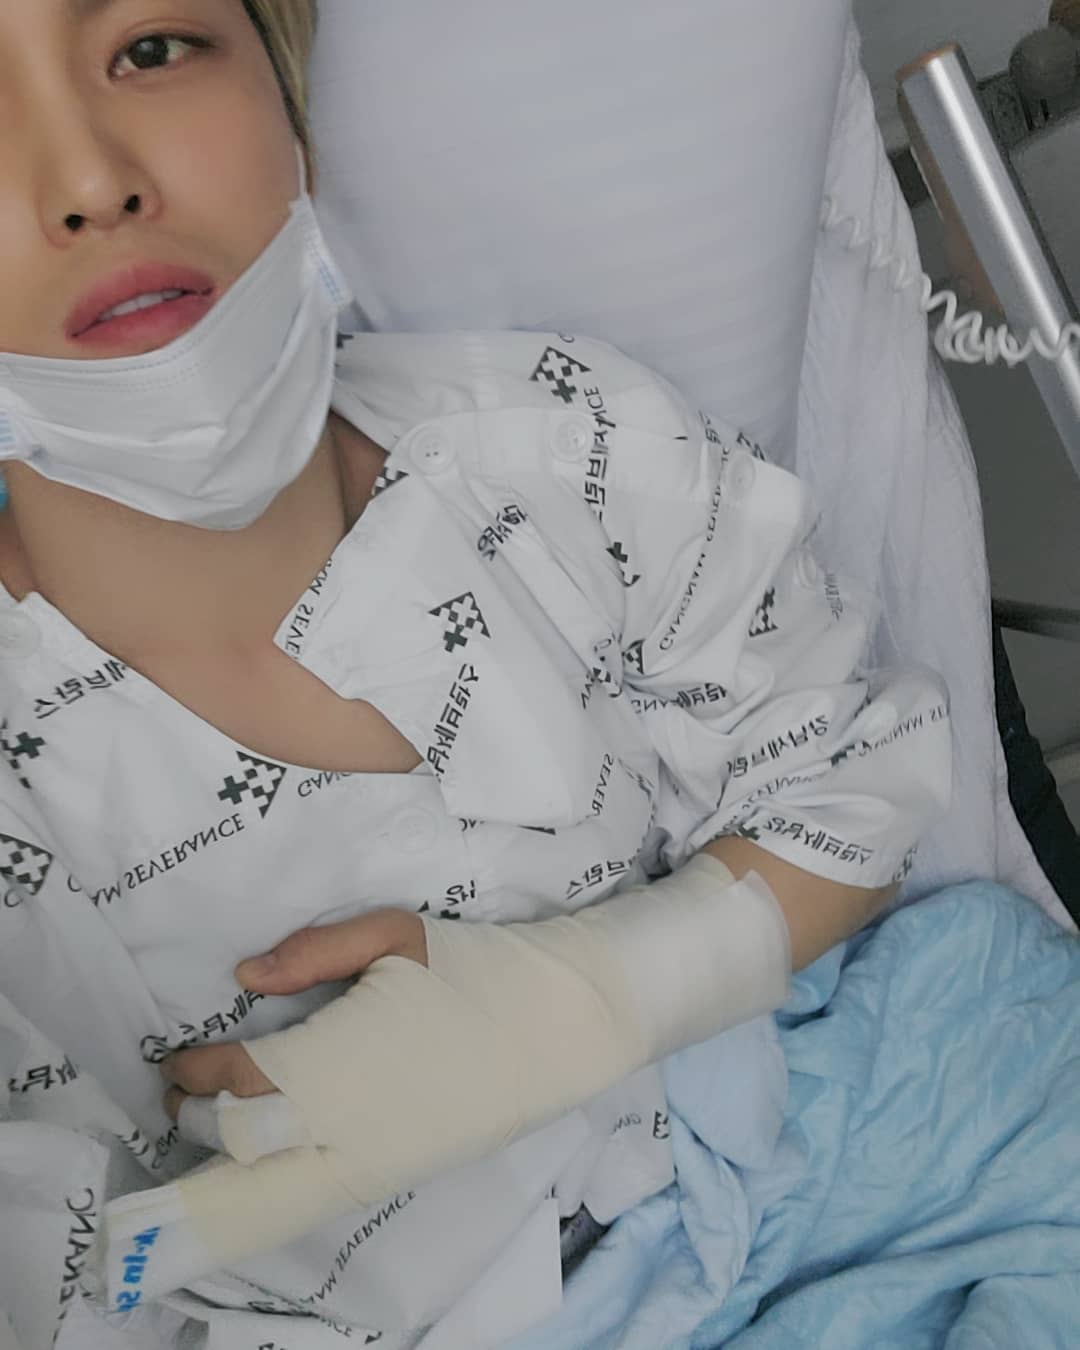 キム ジェジュン 指のけがで入院 新年に厄落とし 心配しないで Chosun Online 朝鮮日報